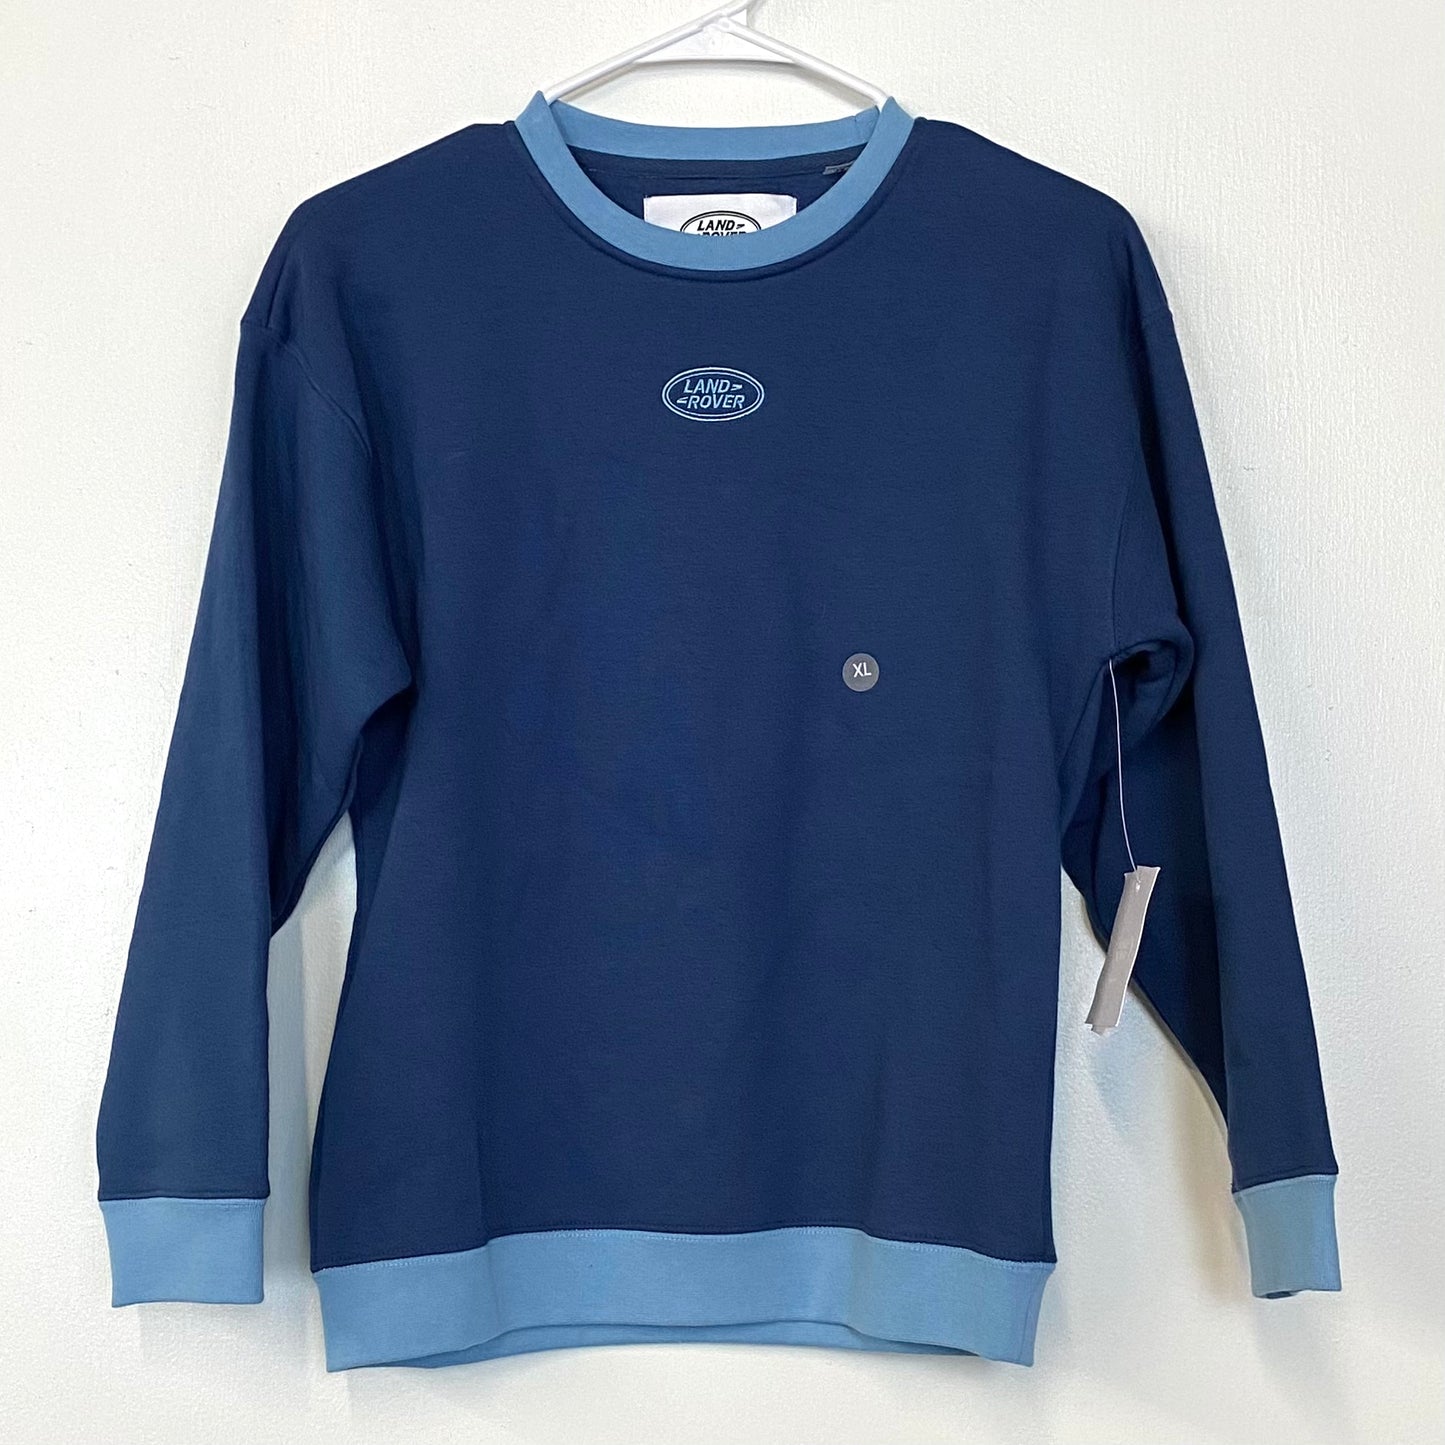 PACSUN ‘Land Rover’ Kids Size XL Blue/Blue Crewneck Sweatshirt L/s NWT